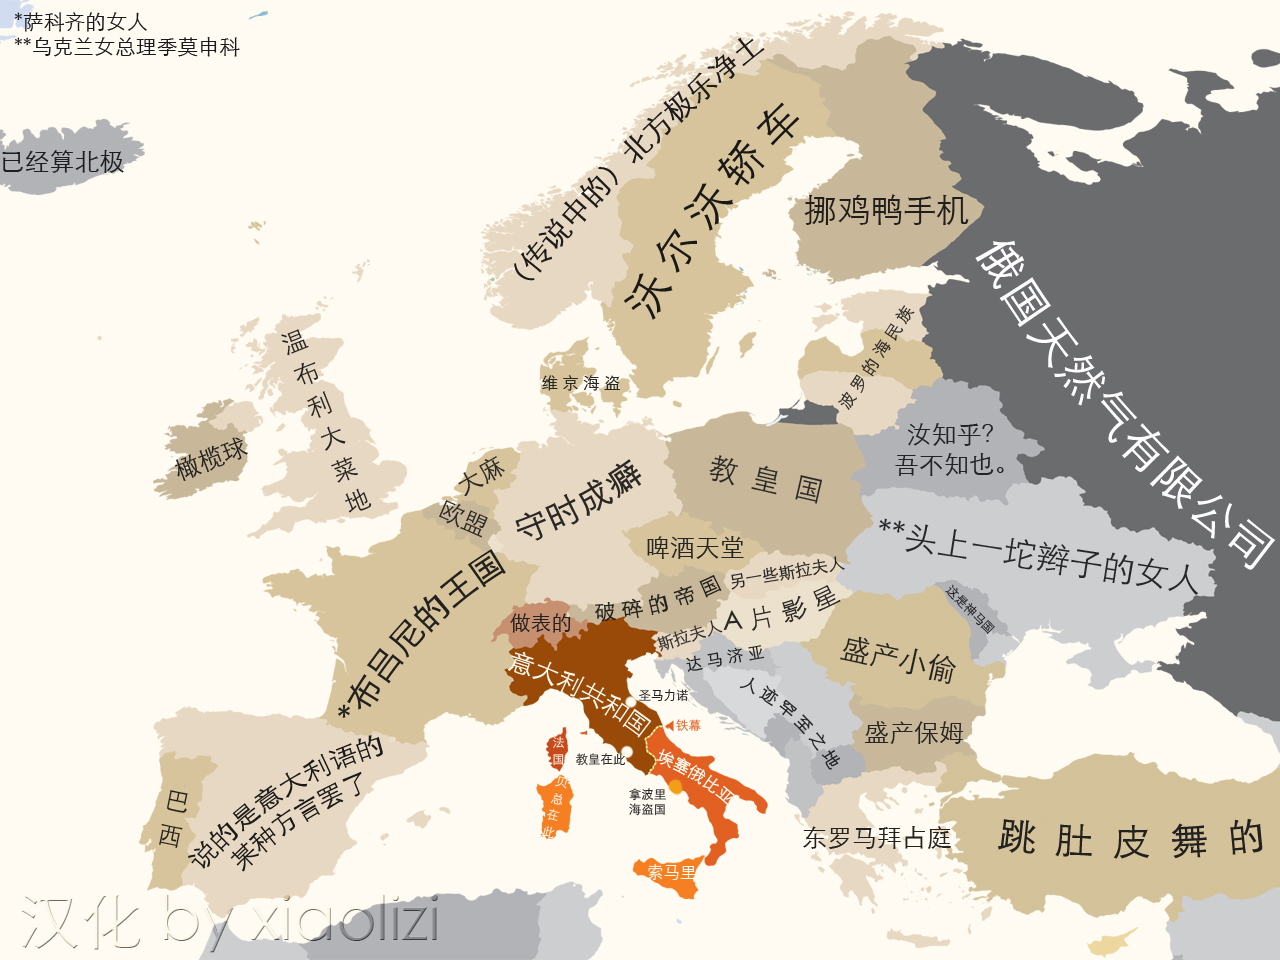 【意大利人眼中的欧洲地图(或者是北部意大利人)】……自我吐槽极其图片